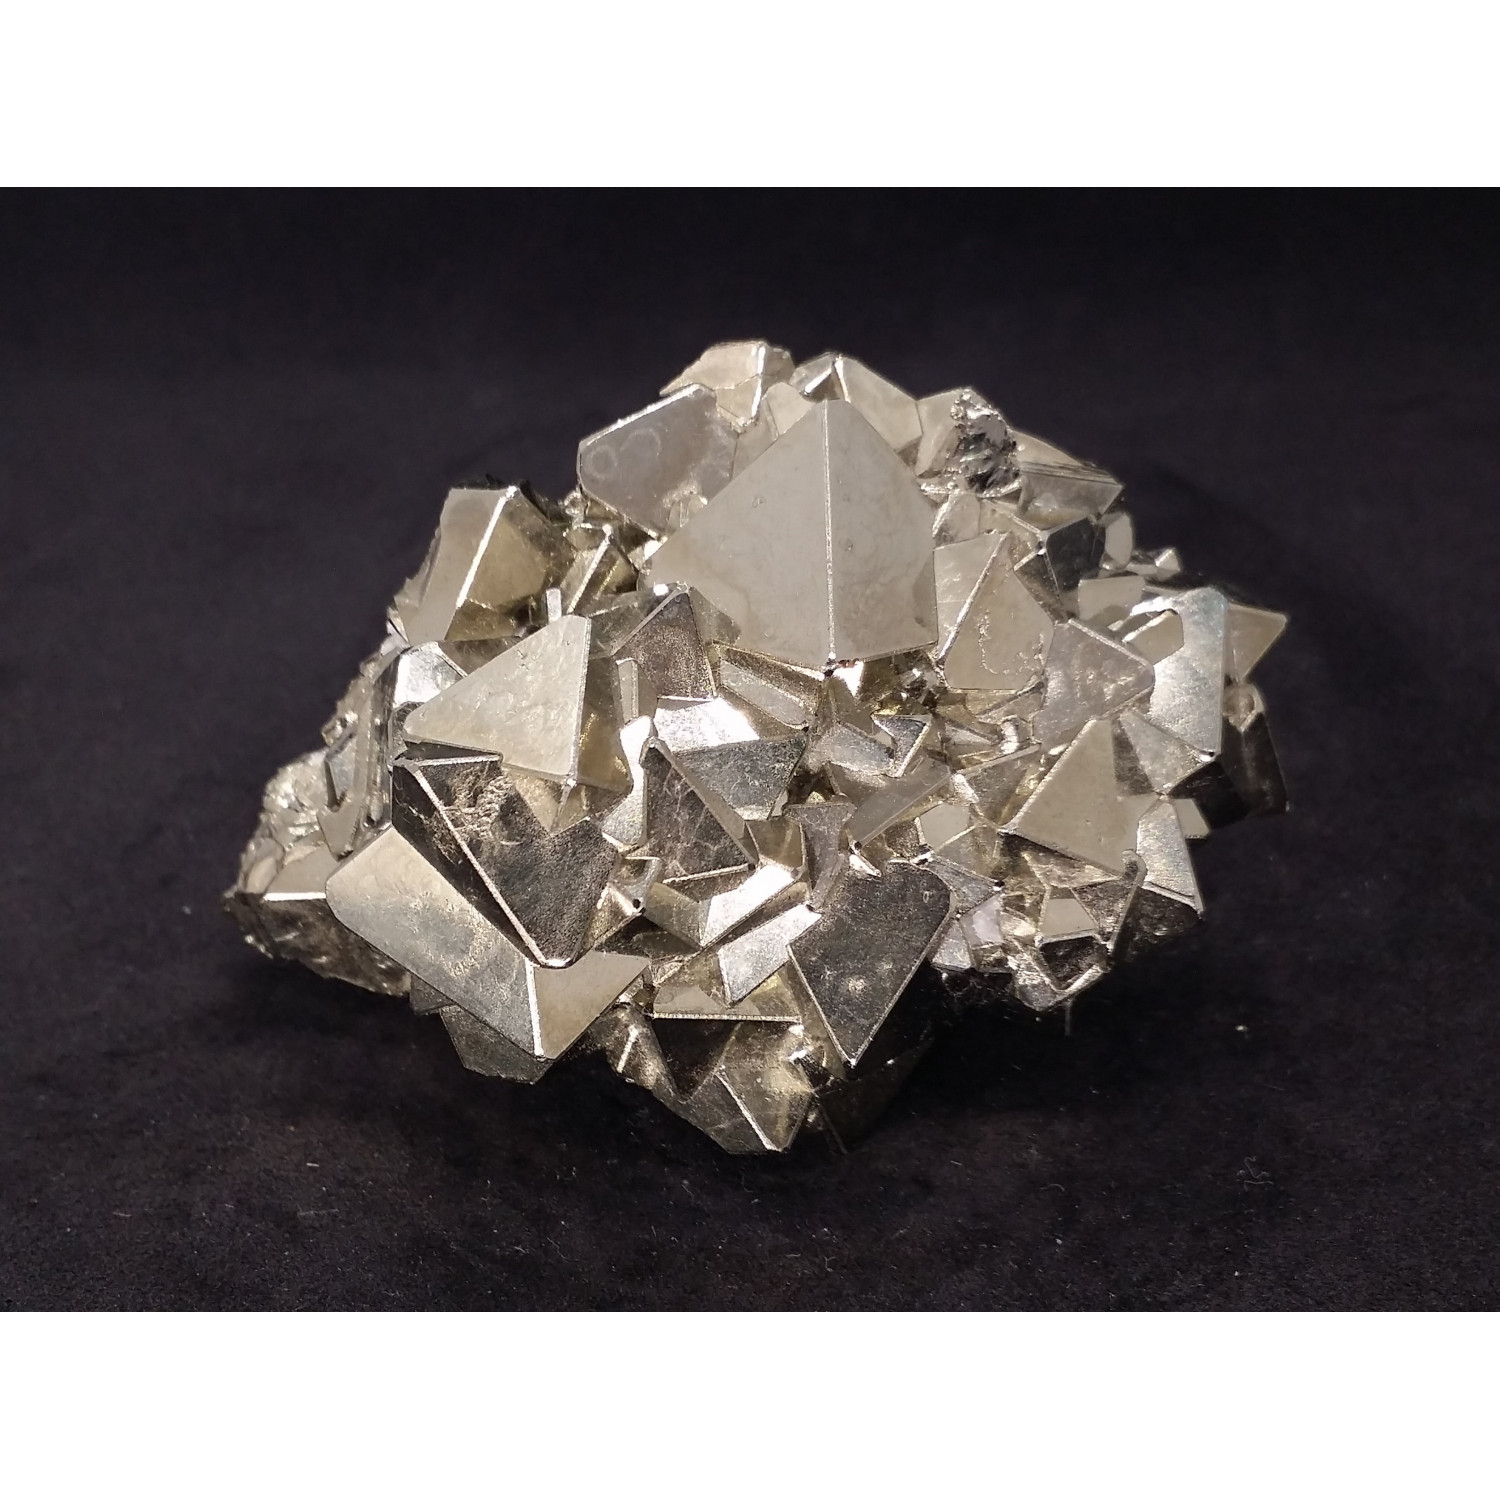 Pyrite Unusual Distorted Icosahedron Crystals Tanzania 